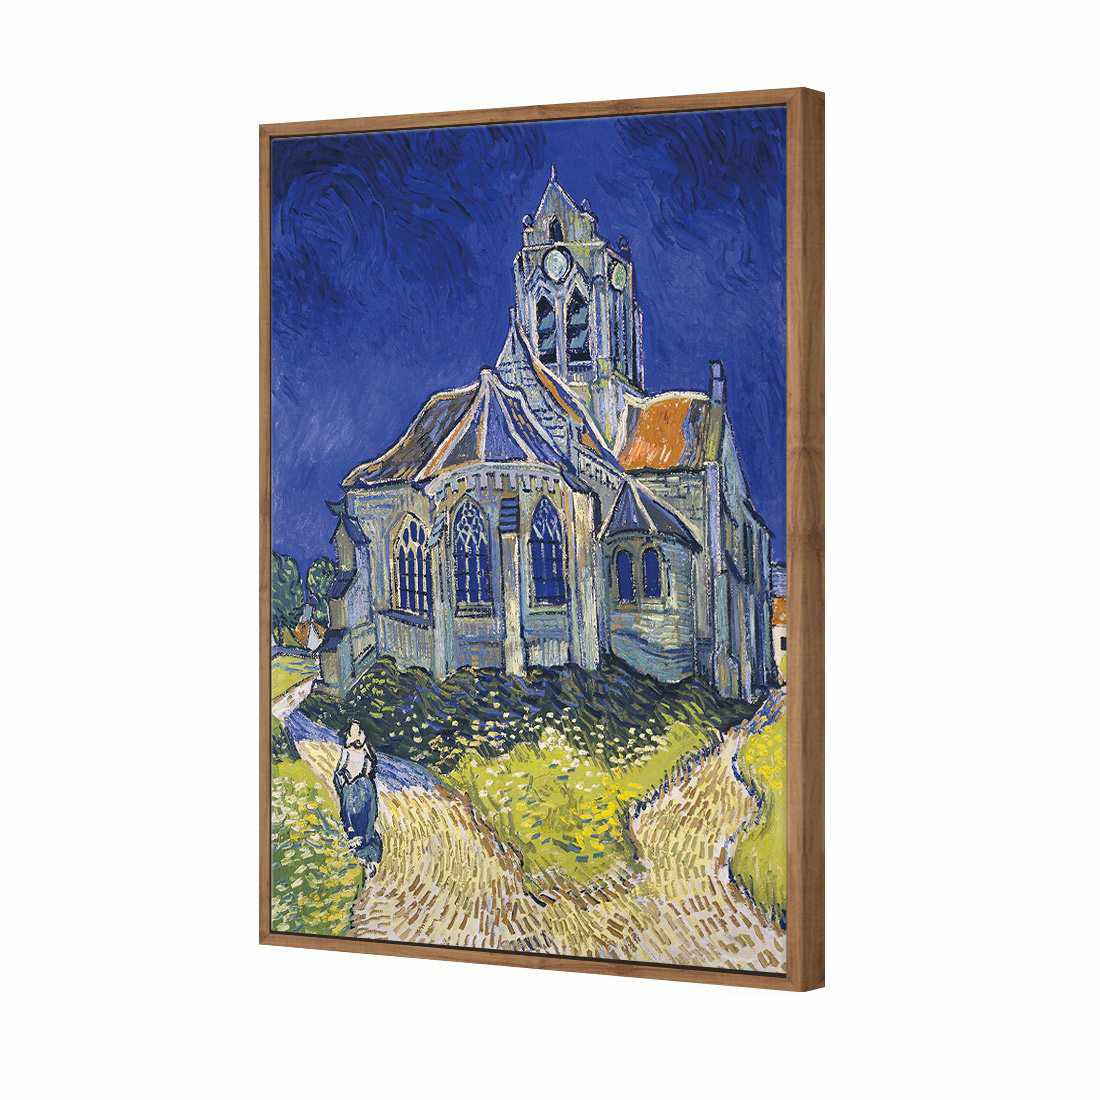 The Church At Auvers - Van Gogh Canvas Art-Canvas-Wall Art Designs-45x30cm-Canvas - Natural Frame-Wall Art Designs